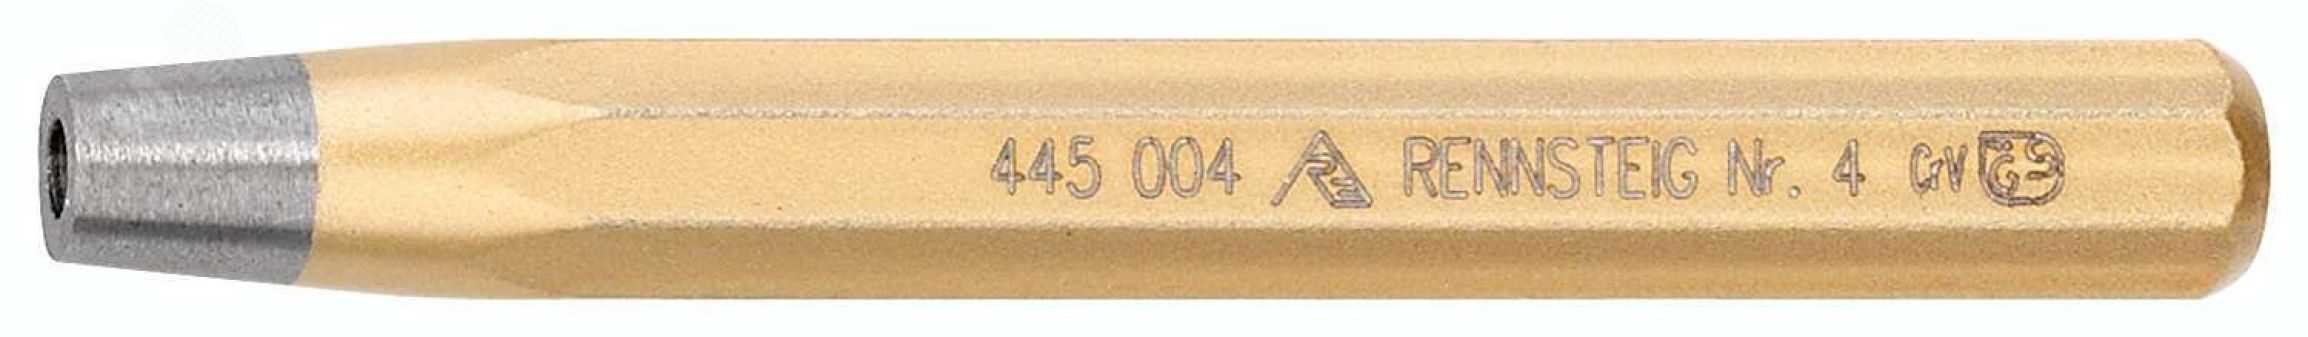 Натяжка для заклепок DIN 6434, заклепка 5 мм, отв. 6 мм, 12 x 110 мм, 8-гранный профиль, для сжатия ( осадки) листов перед клепкой RE-4450050 RENNSTEIG